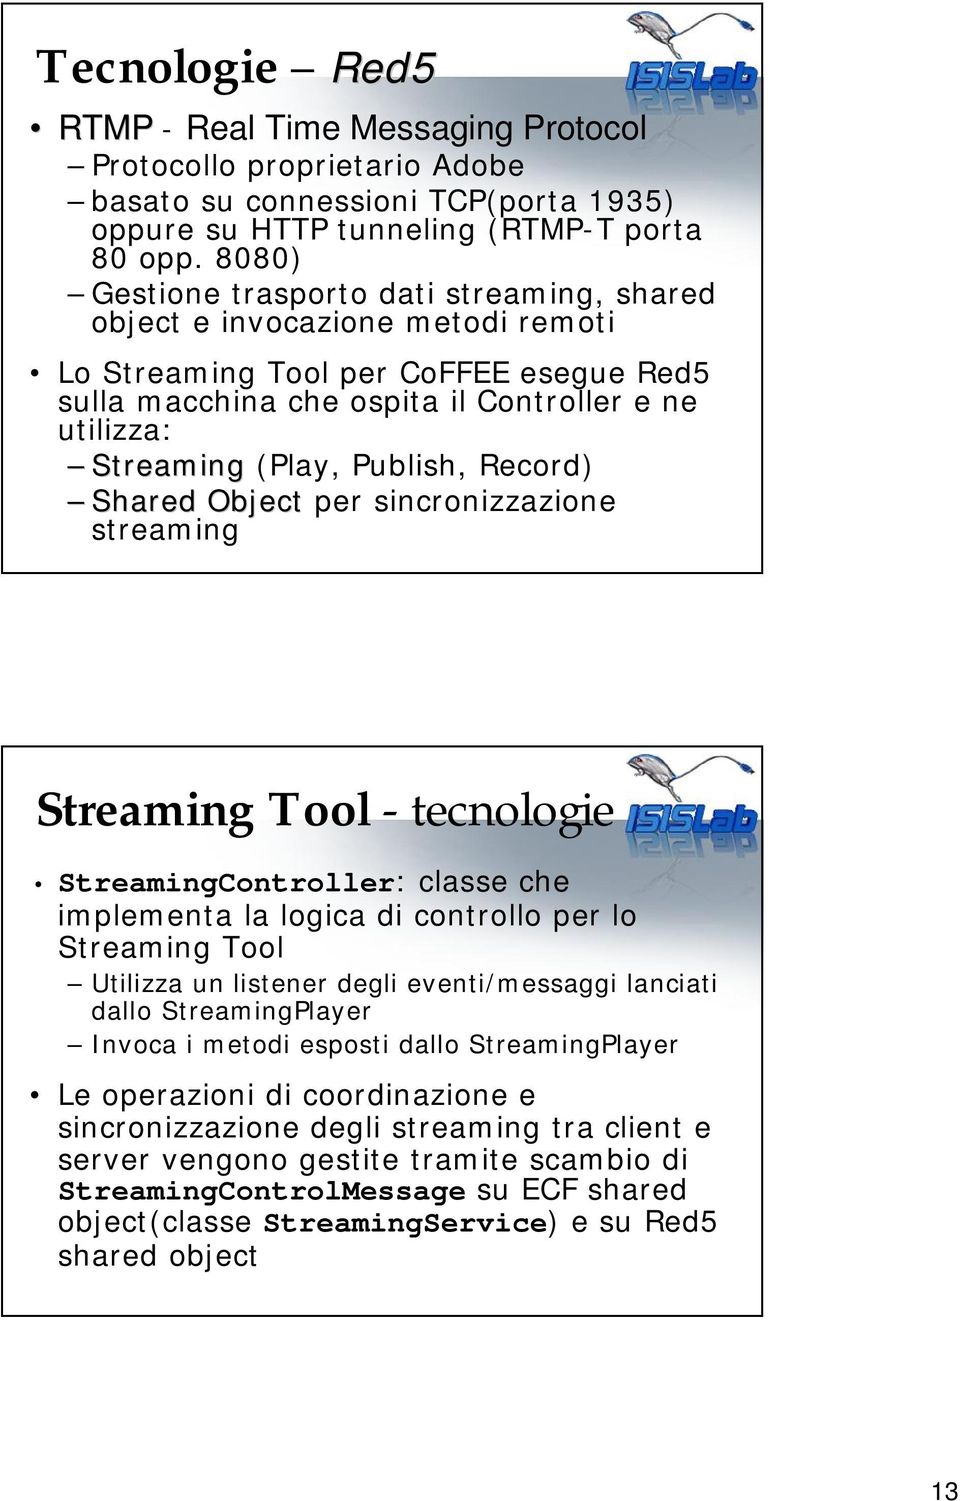 Publish, Record) Shared Object per sincronizzazione streaming Streaming Tool - tecnologie StreamingController: classe che implementa la logica di controllo per lo Streaming Tool Utilizza un listener